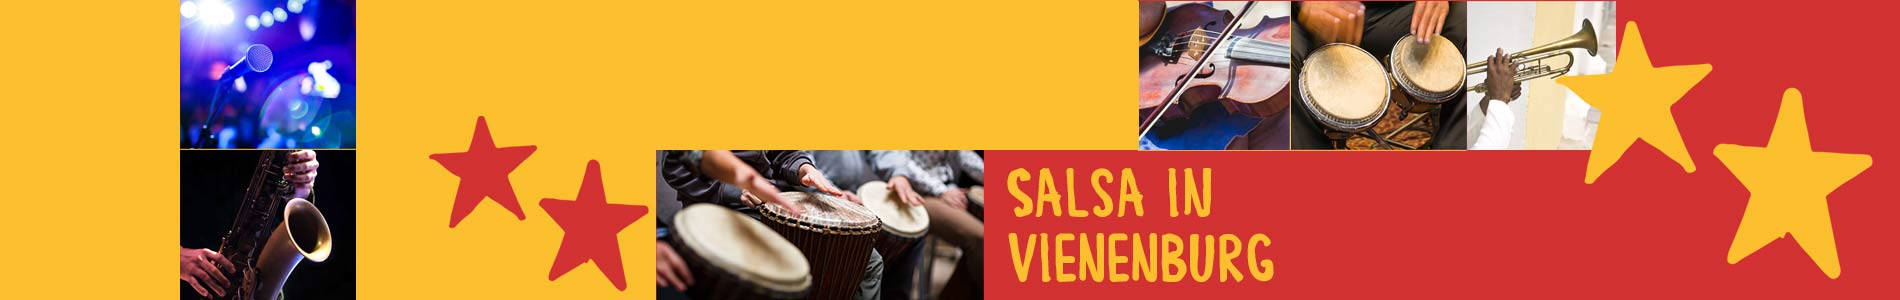 Salsa in Vienenburg – Salsa lernen und tanzen, Tanzkurse, Partys, Veranstaltungen